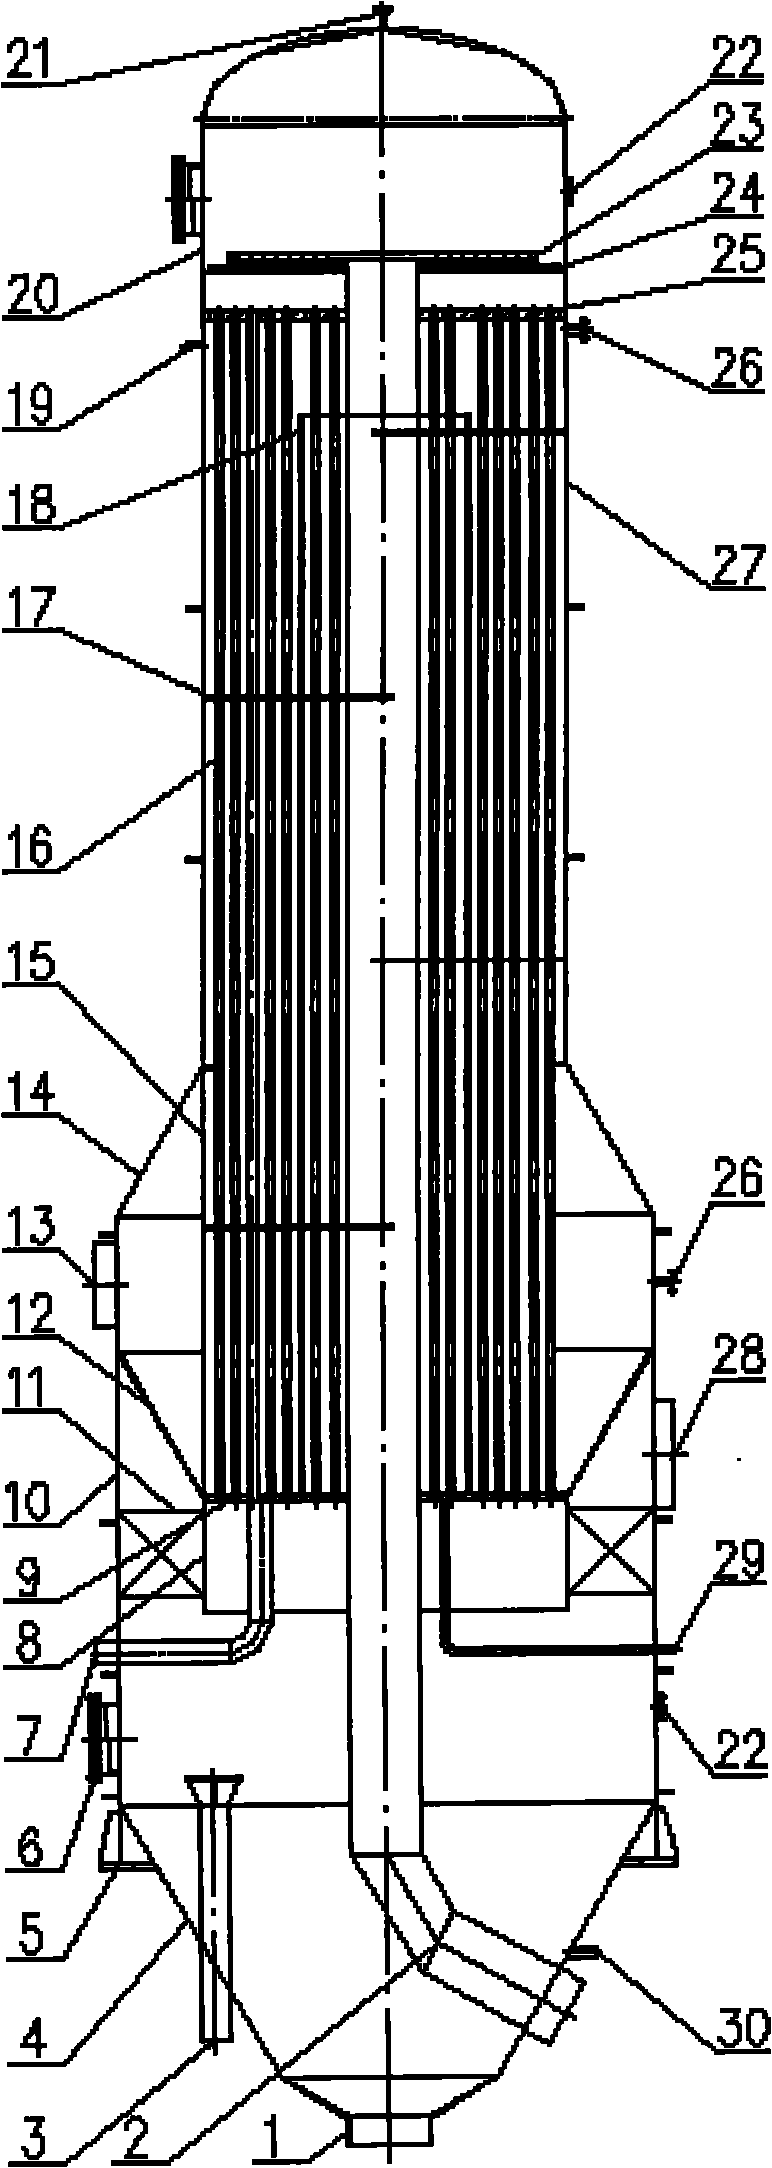 Tubular falling film evaporator